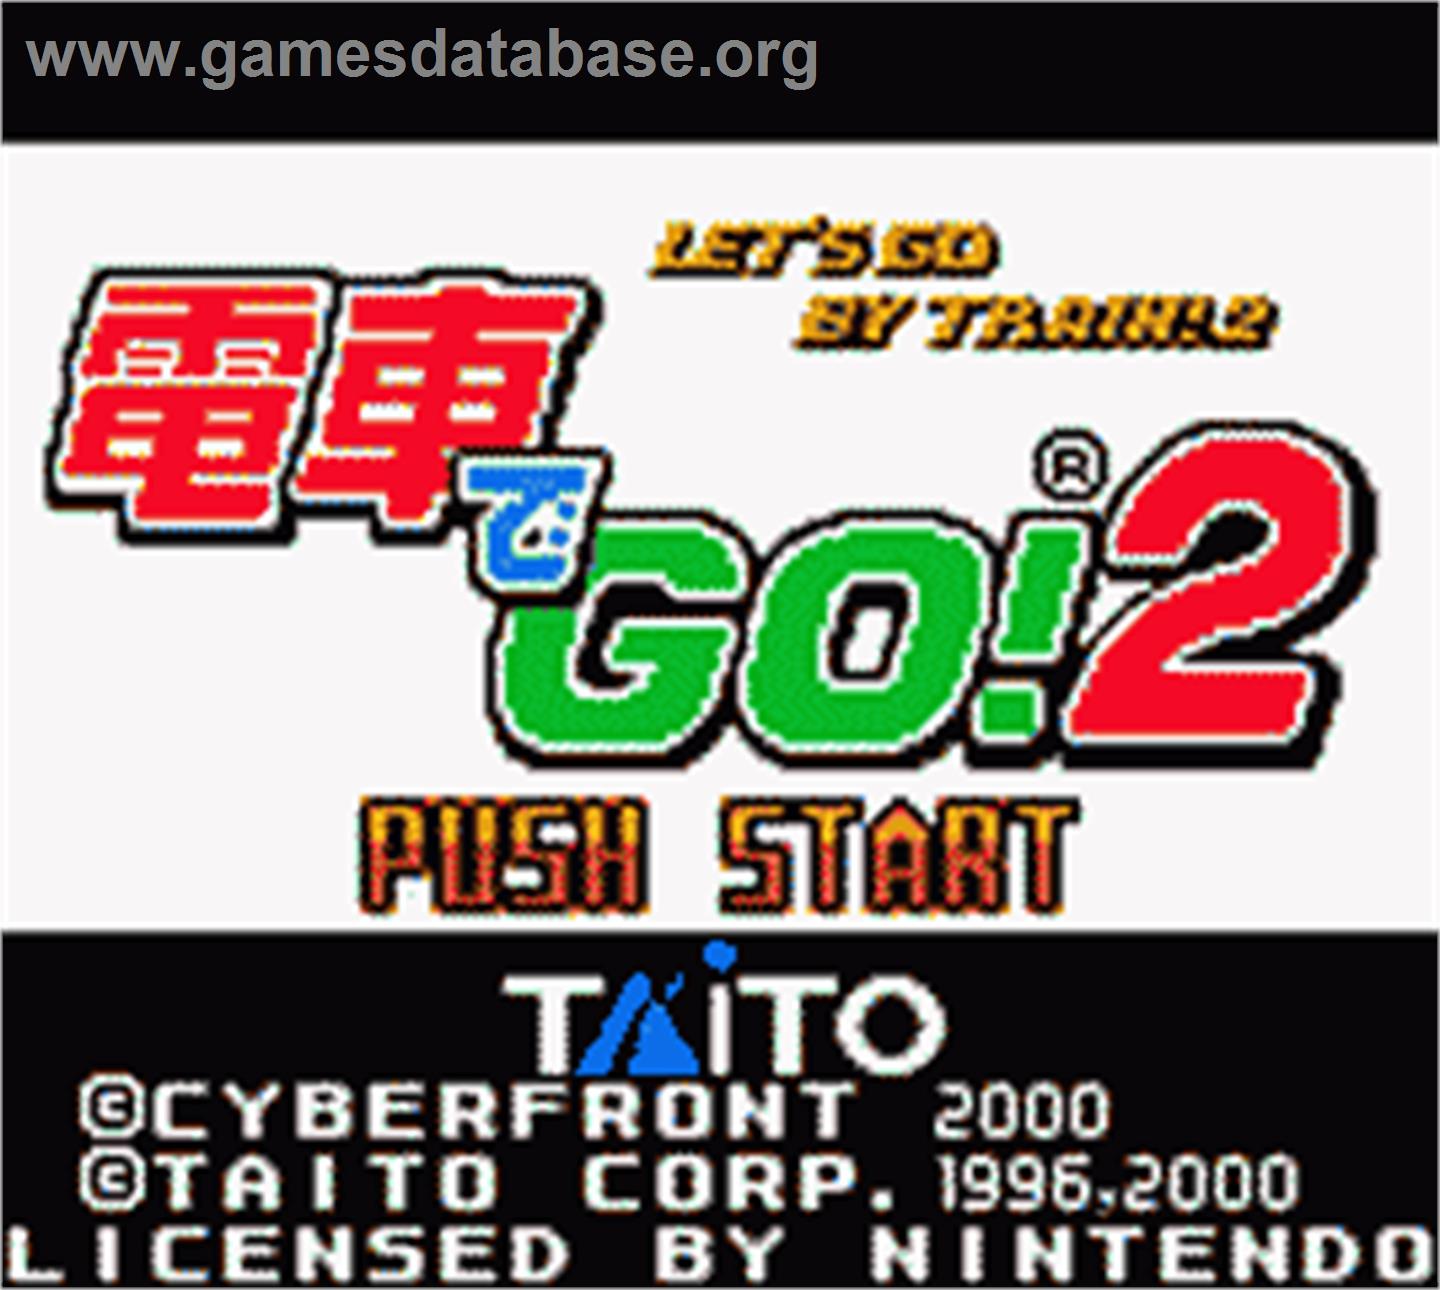 Densya De Go 2 - Nintendo Game Boy Color - Artwork - Title Screen